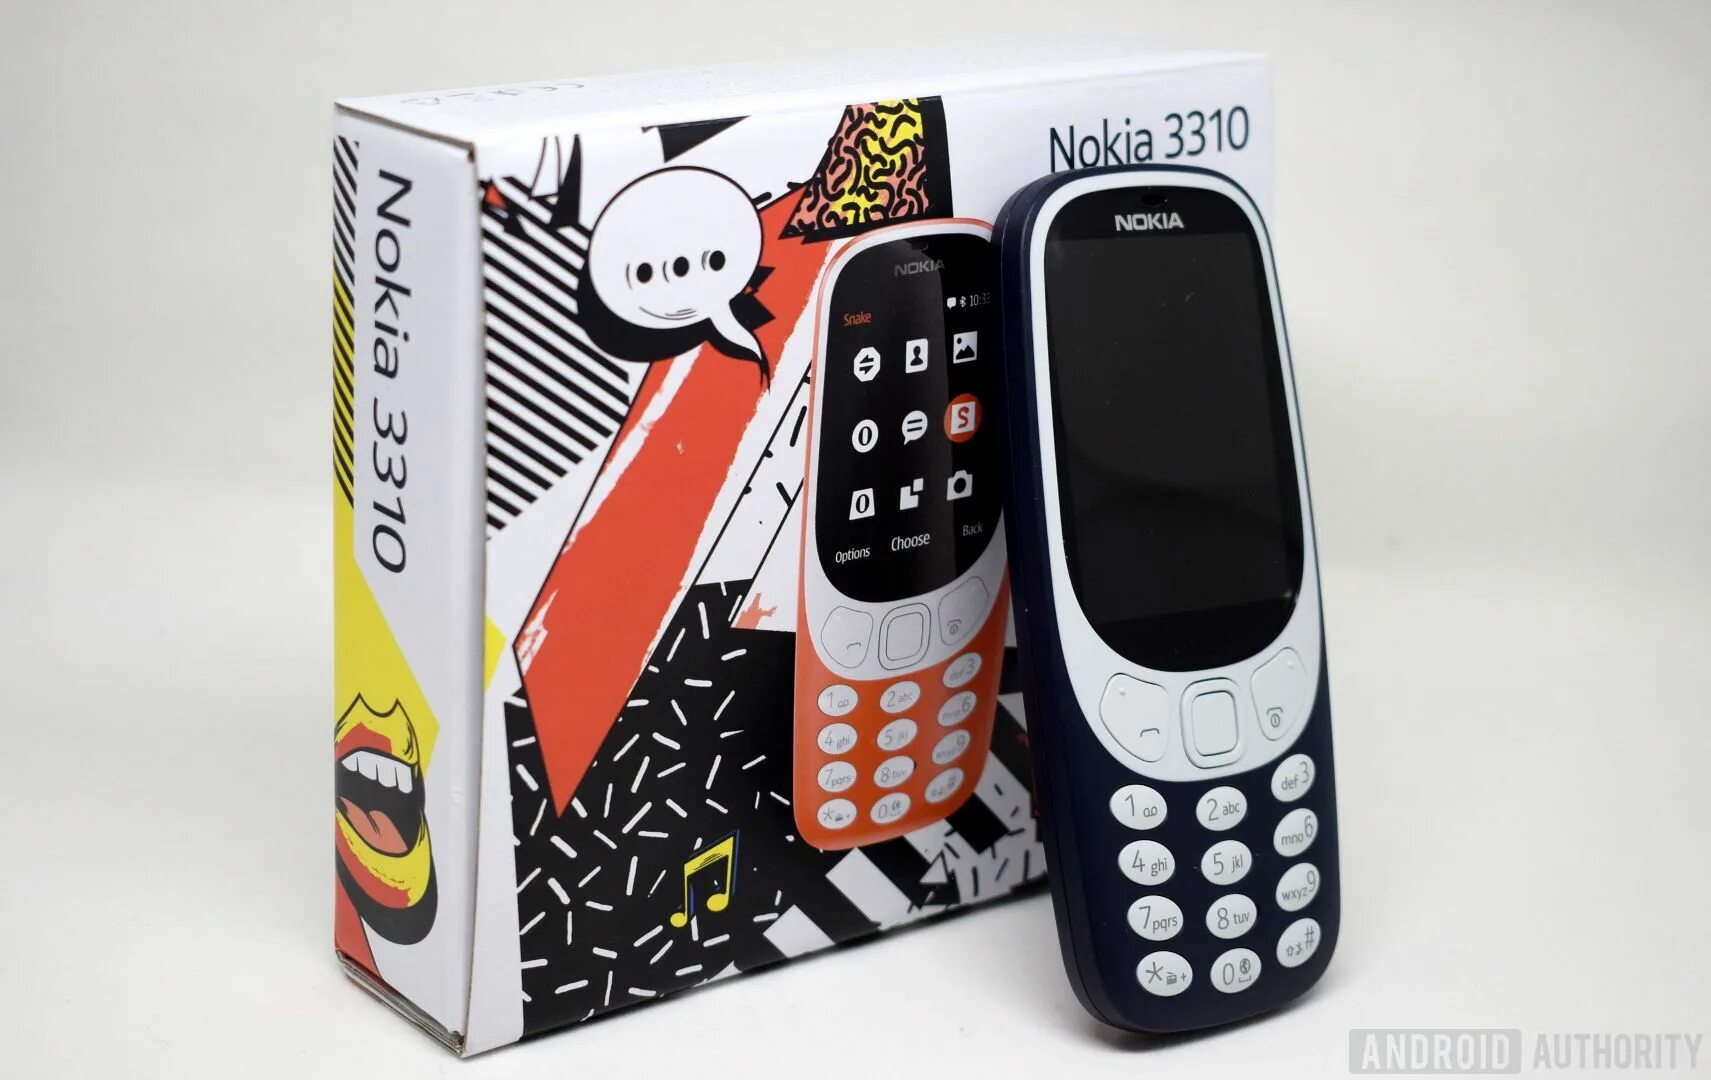 Купить нокиа 3310 оригинал. Нокиа 3310 2017. Nokia 3310 2021. Nokia 3310 New. Nokia 3310 Dual SIM.